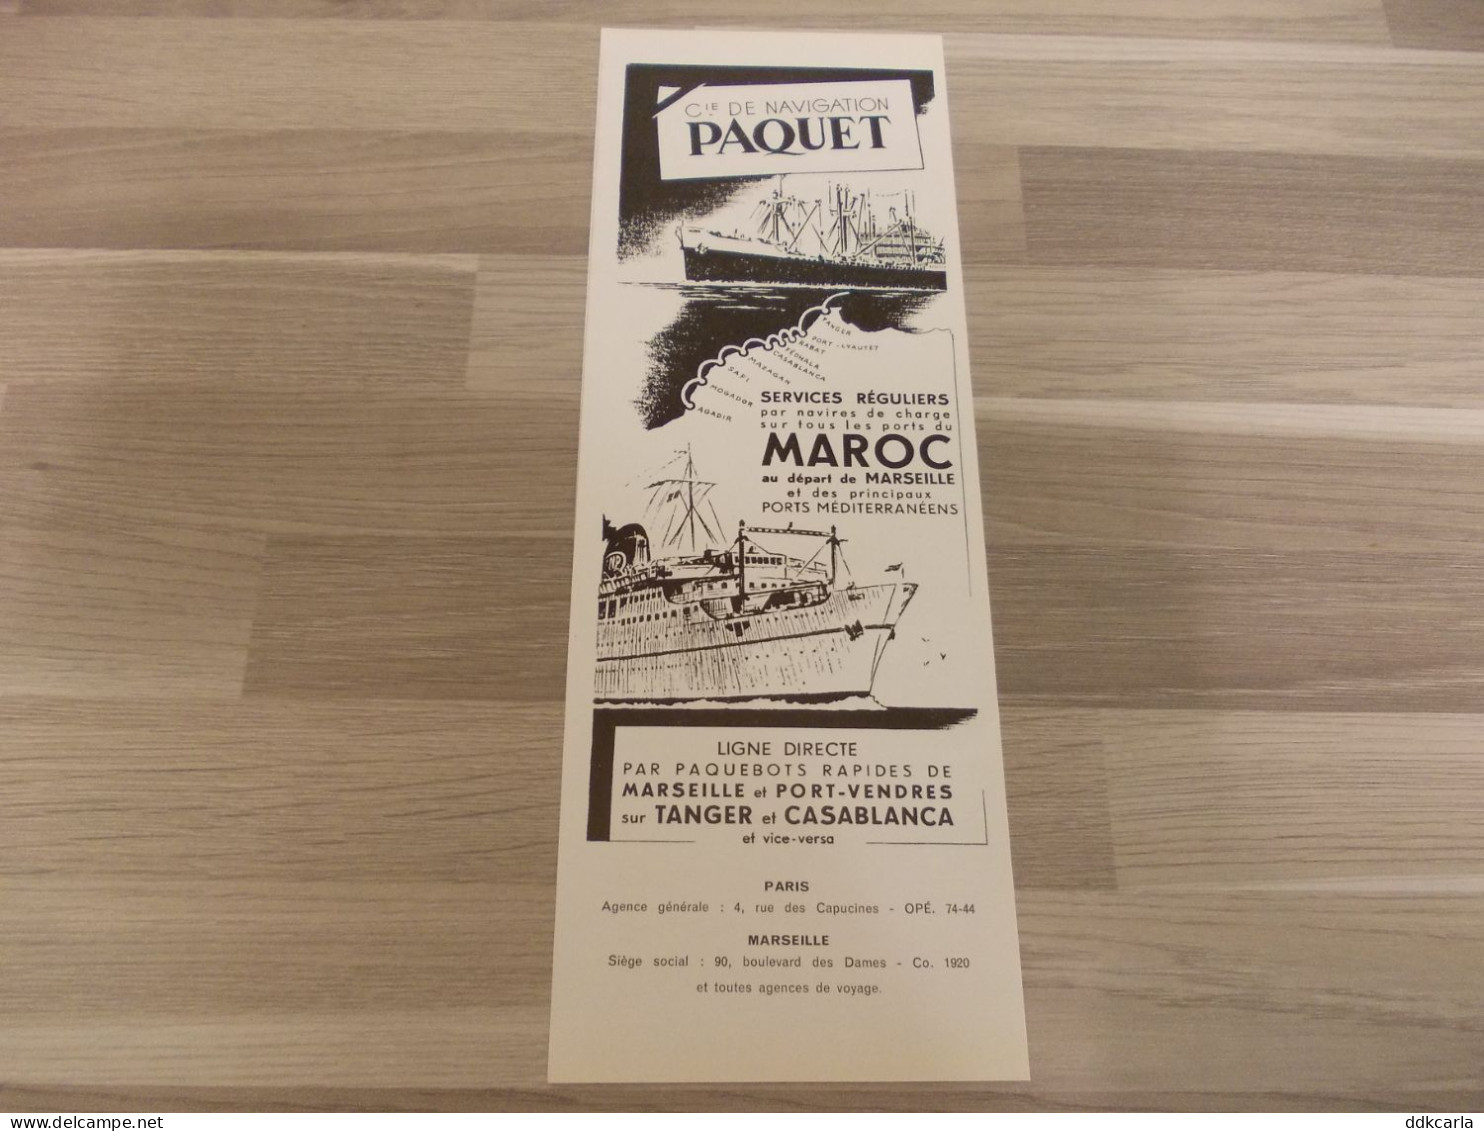 Reclame Advertentie Uit Oud Tijdschrift 1952 - Cie De Navigation Paquet - Advertising